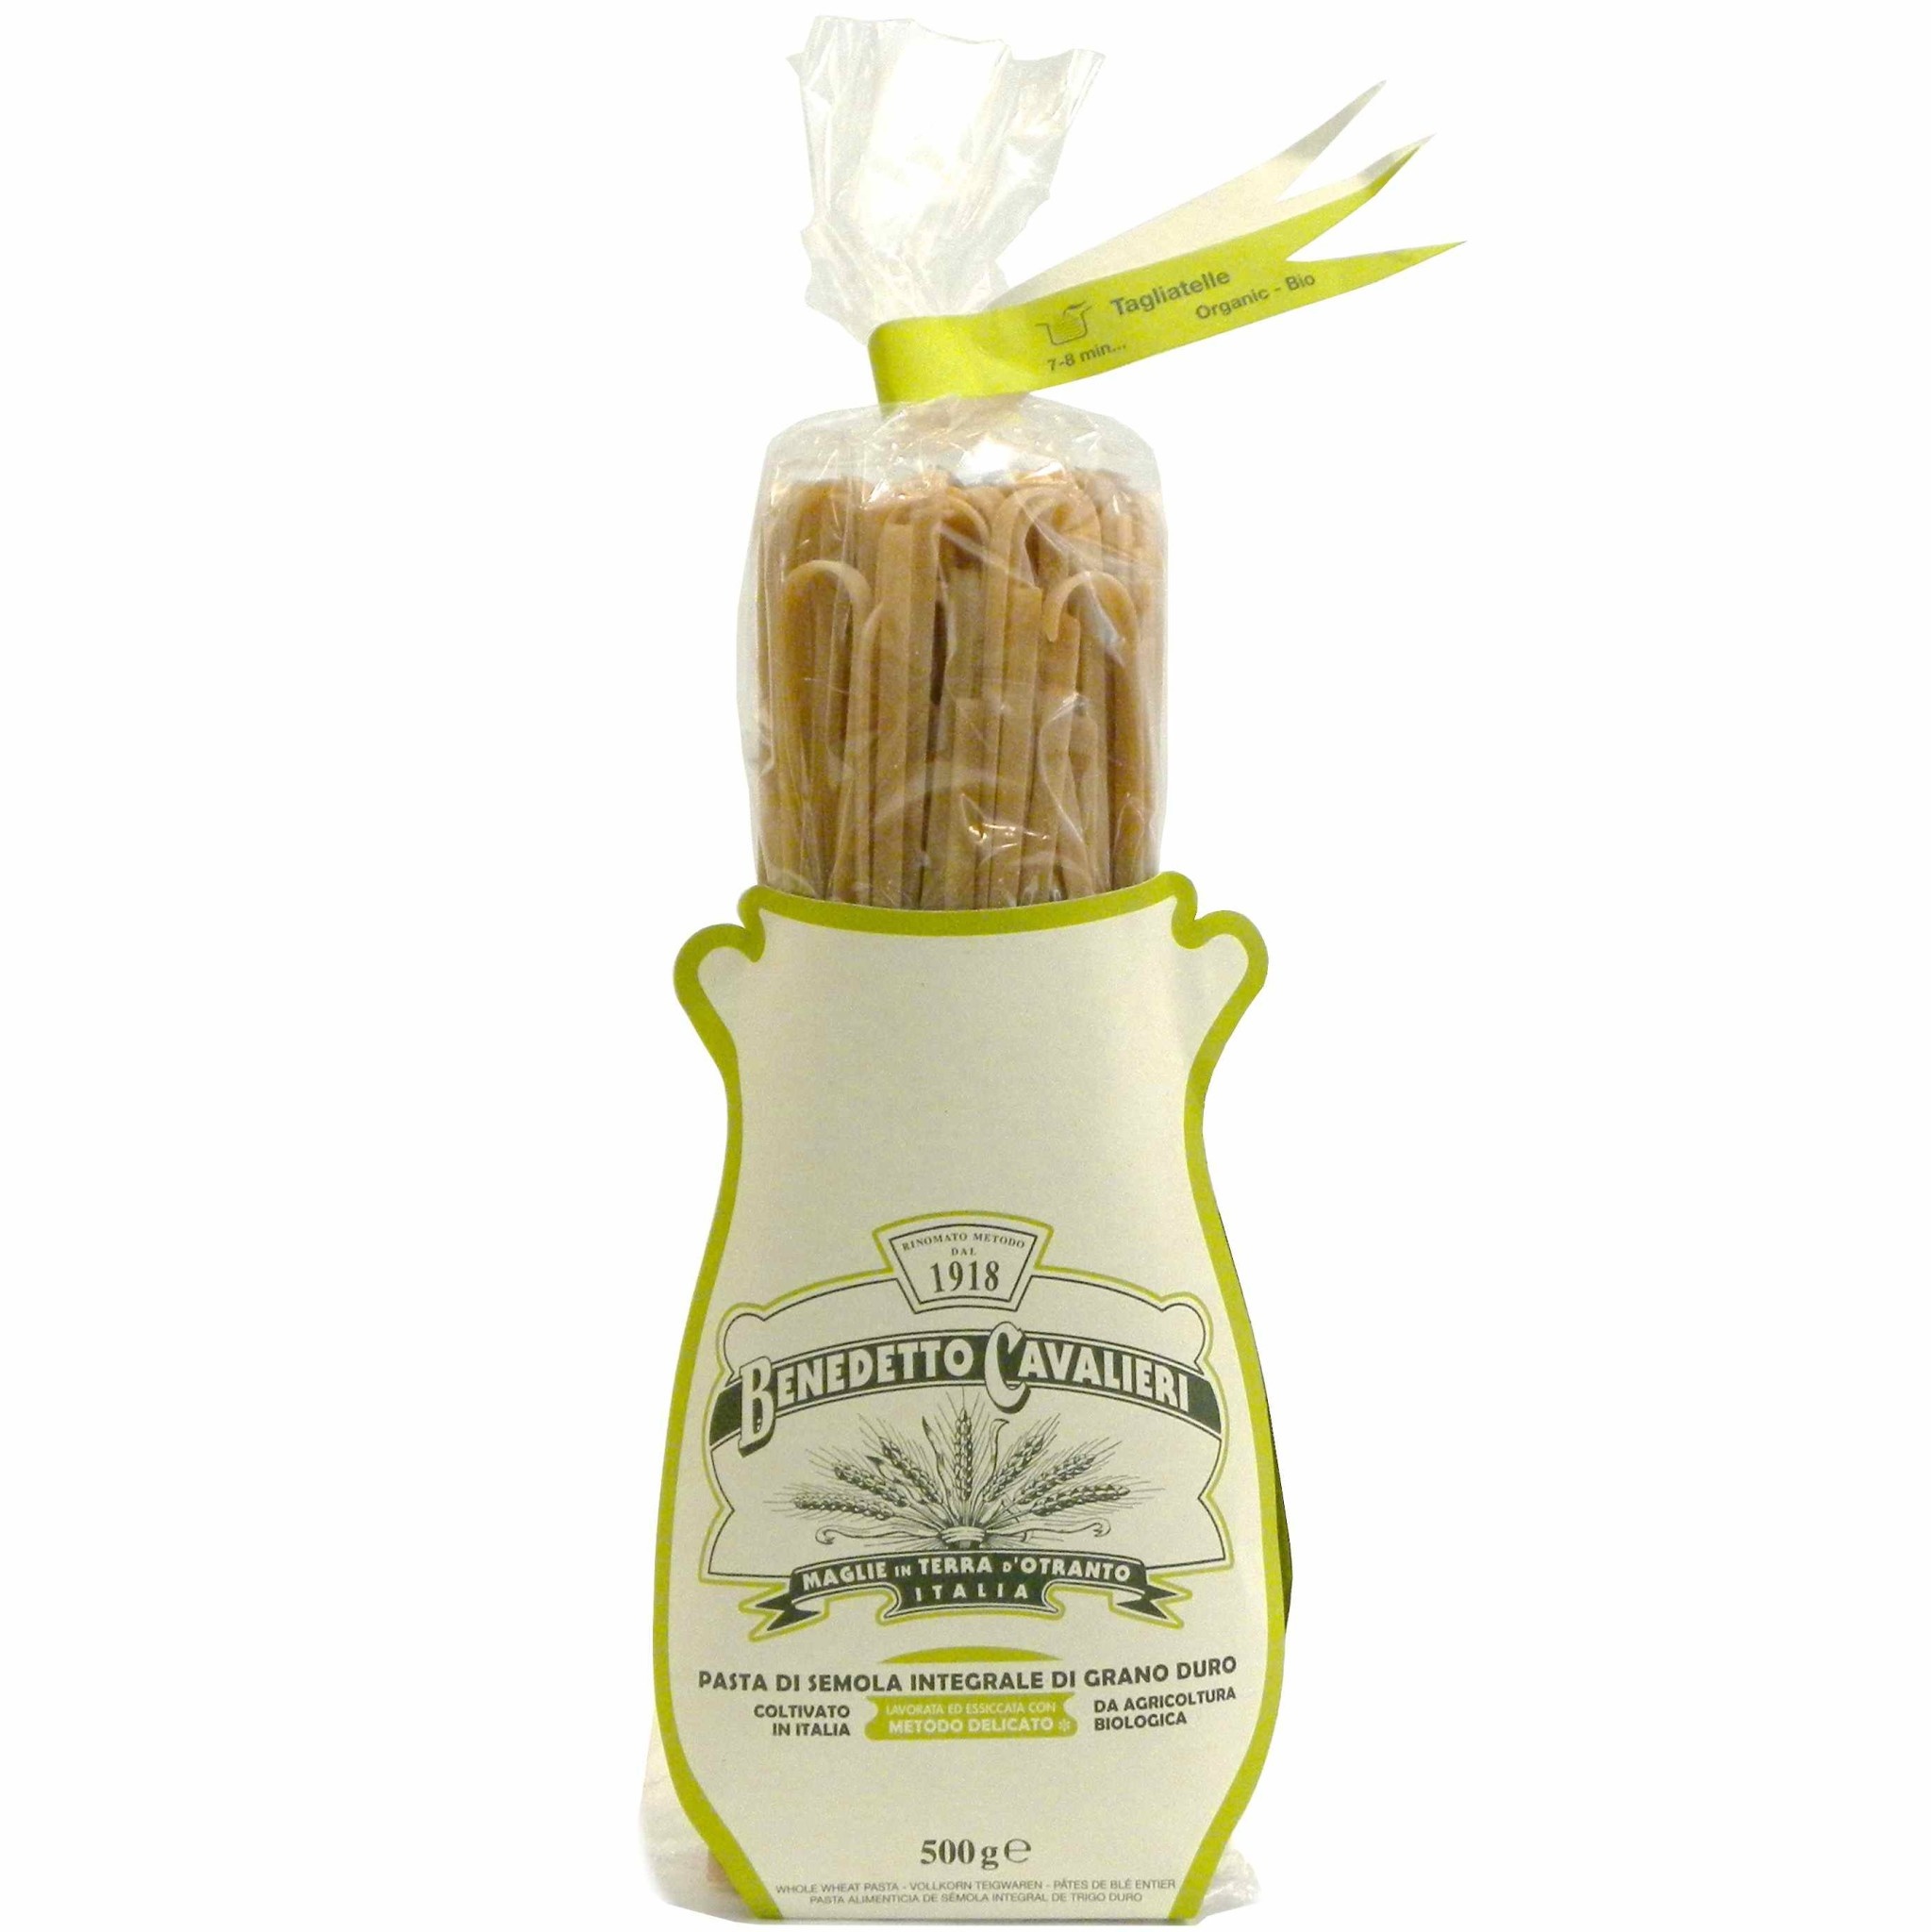 Benedetto Cavalieri "Benedetto Cavalieri" Tagliatelle Organic Whole Wheat Pasta  20/500g